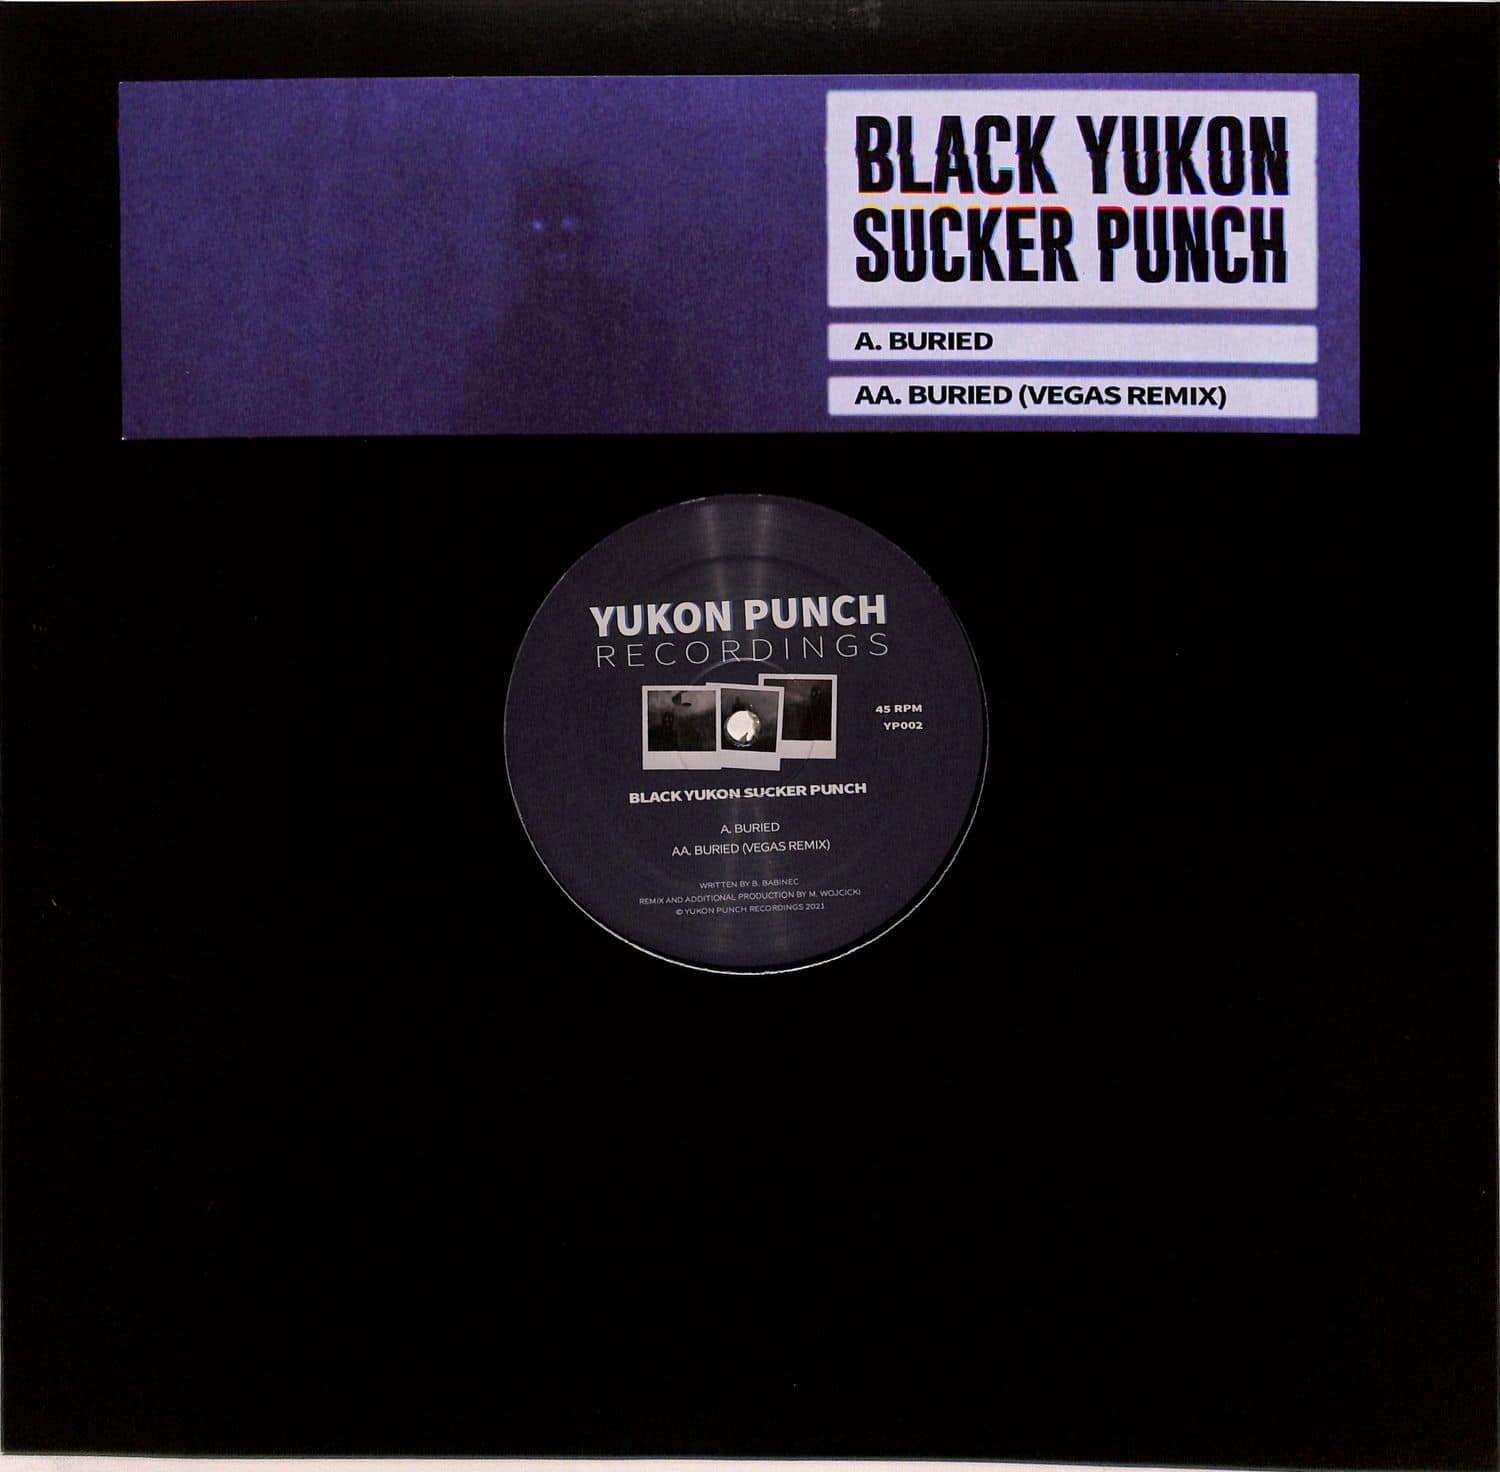 Black Yukon Sucker Punch - BURIED 